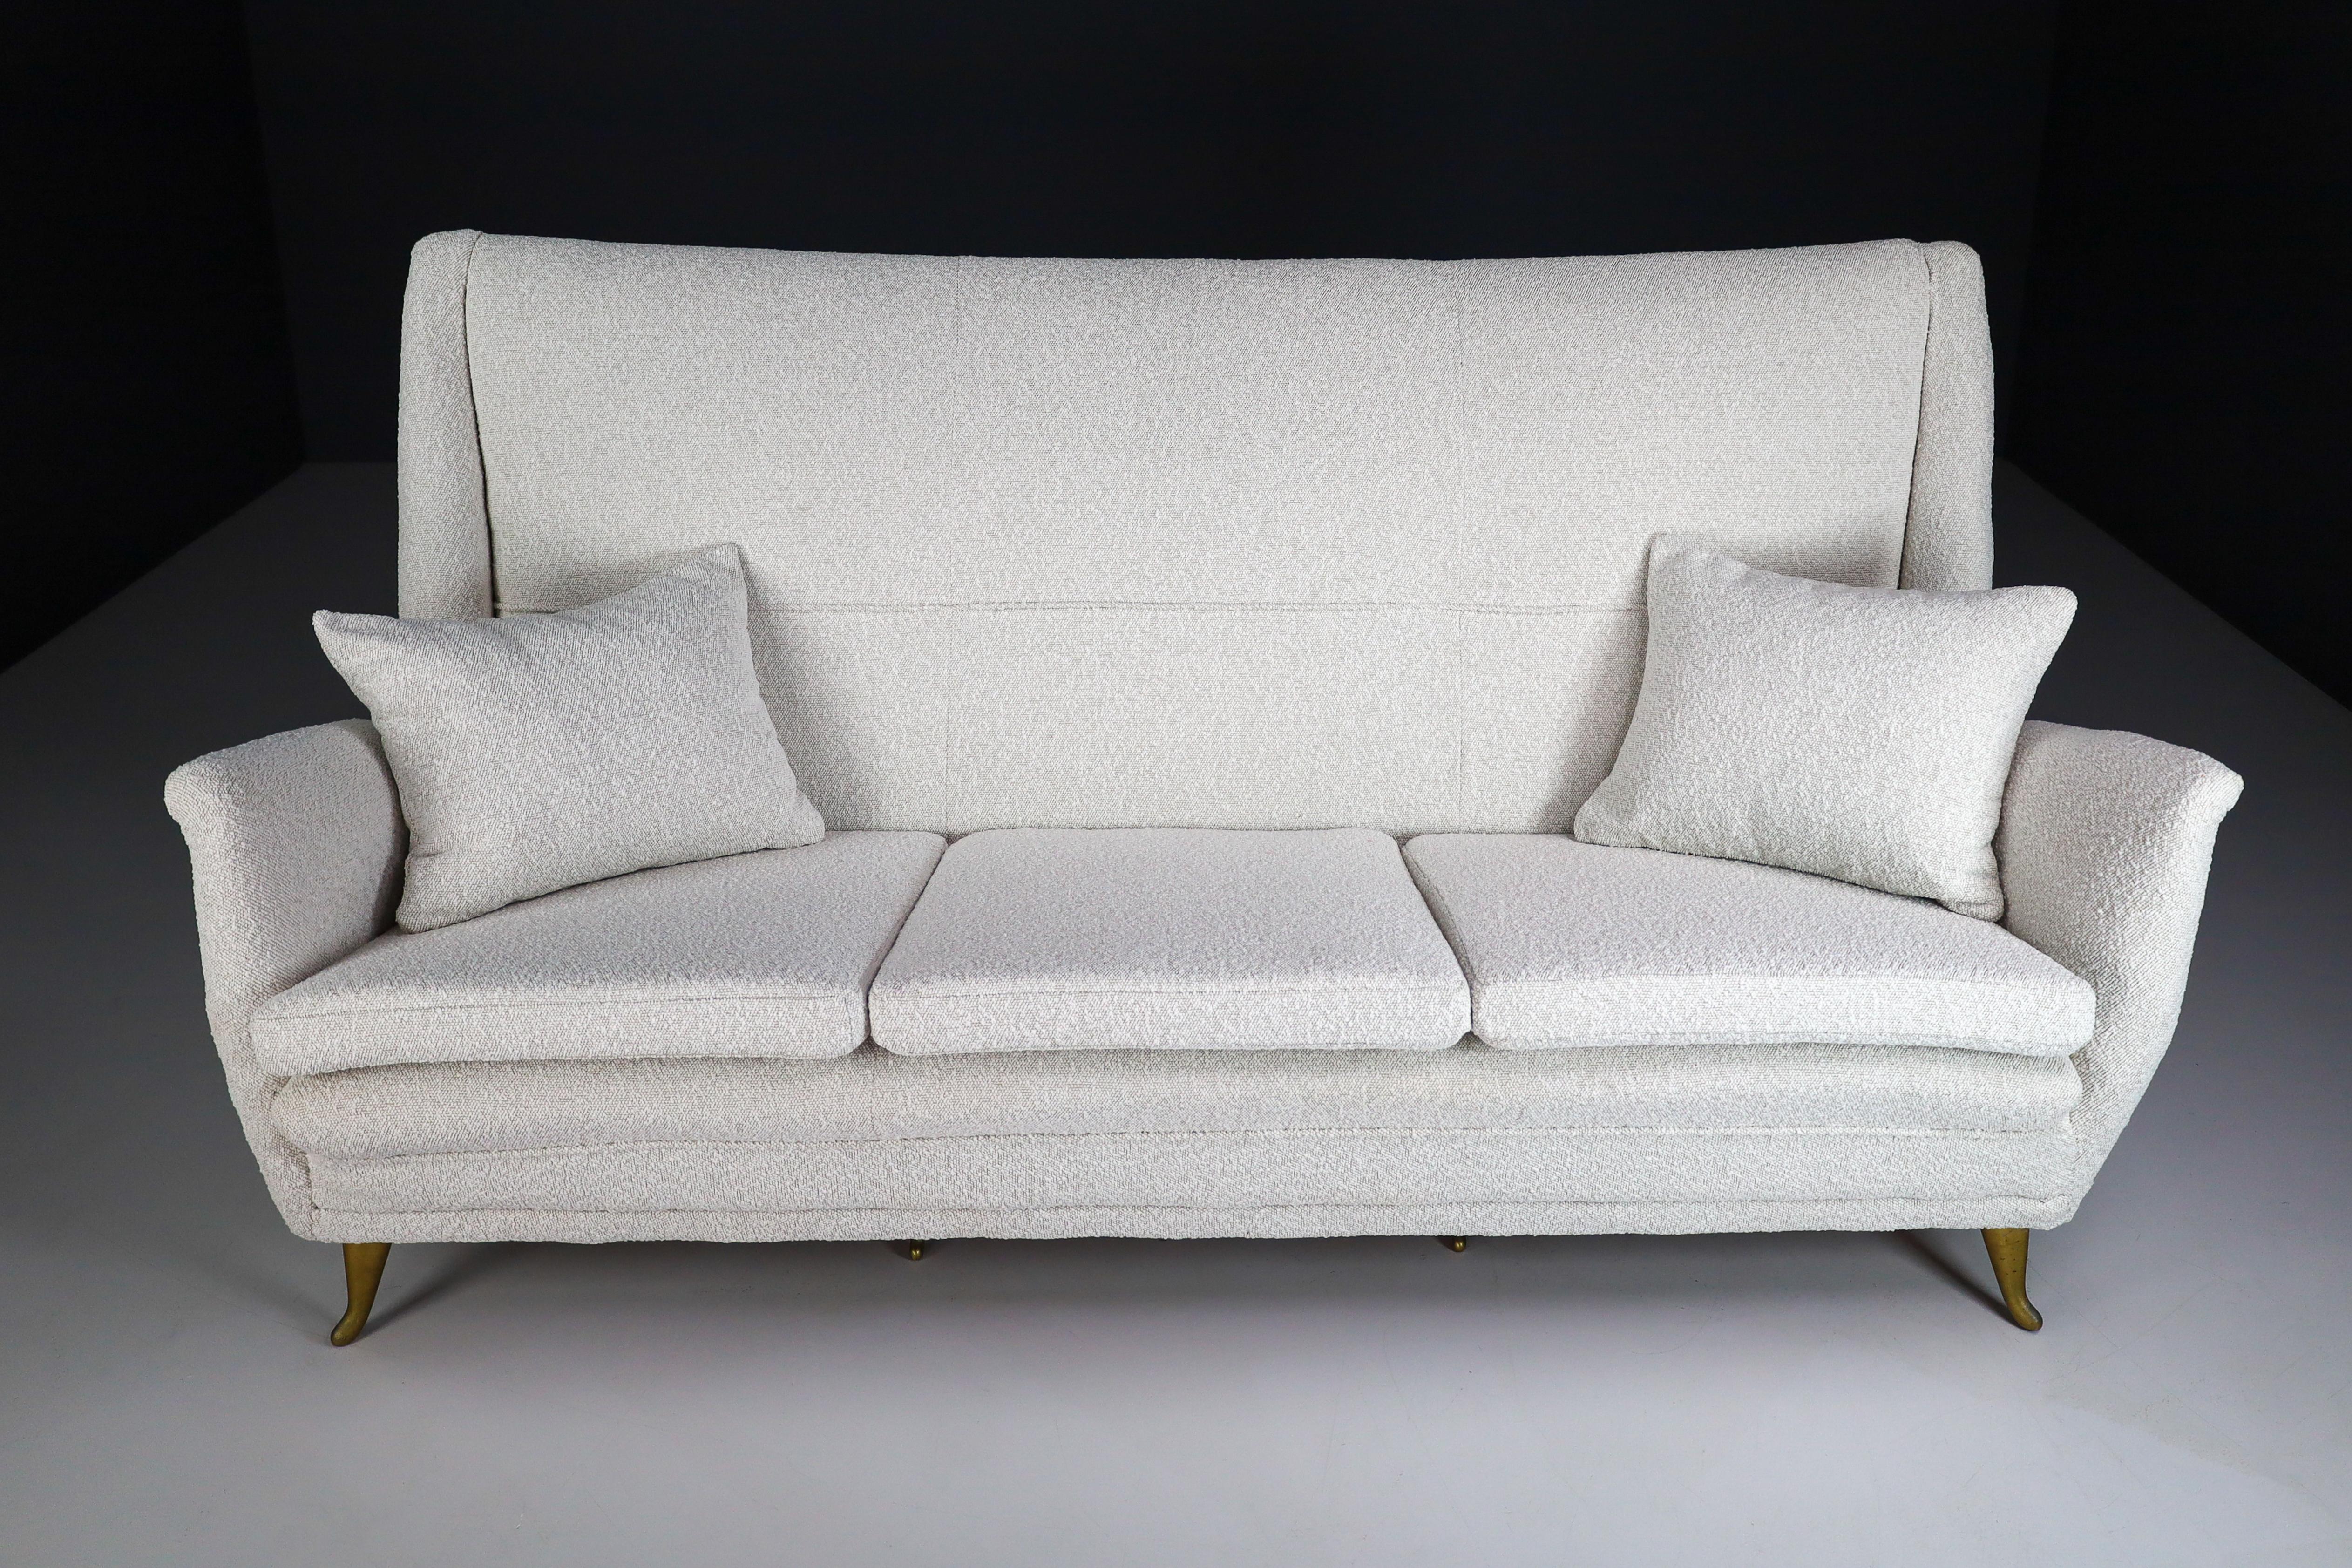 Elegantes Sofa mit drei Sitzen und hoher Rückenlehne, neu gepolstert mit neuem Bouclé-Stoff, entworfen von Gio Ponti und hergestellt von der Firma ISA in Bergamo, Italien in den 1950er Jahren. ISA Bergamo war in den späten 1940er und 1950er Jahren